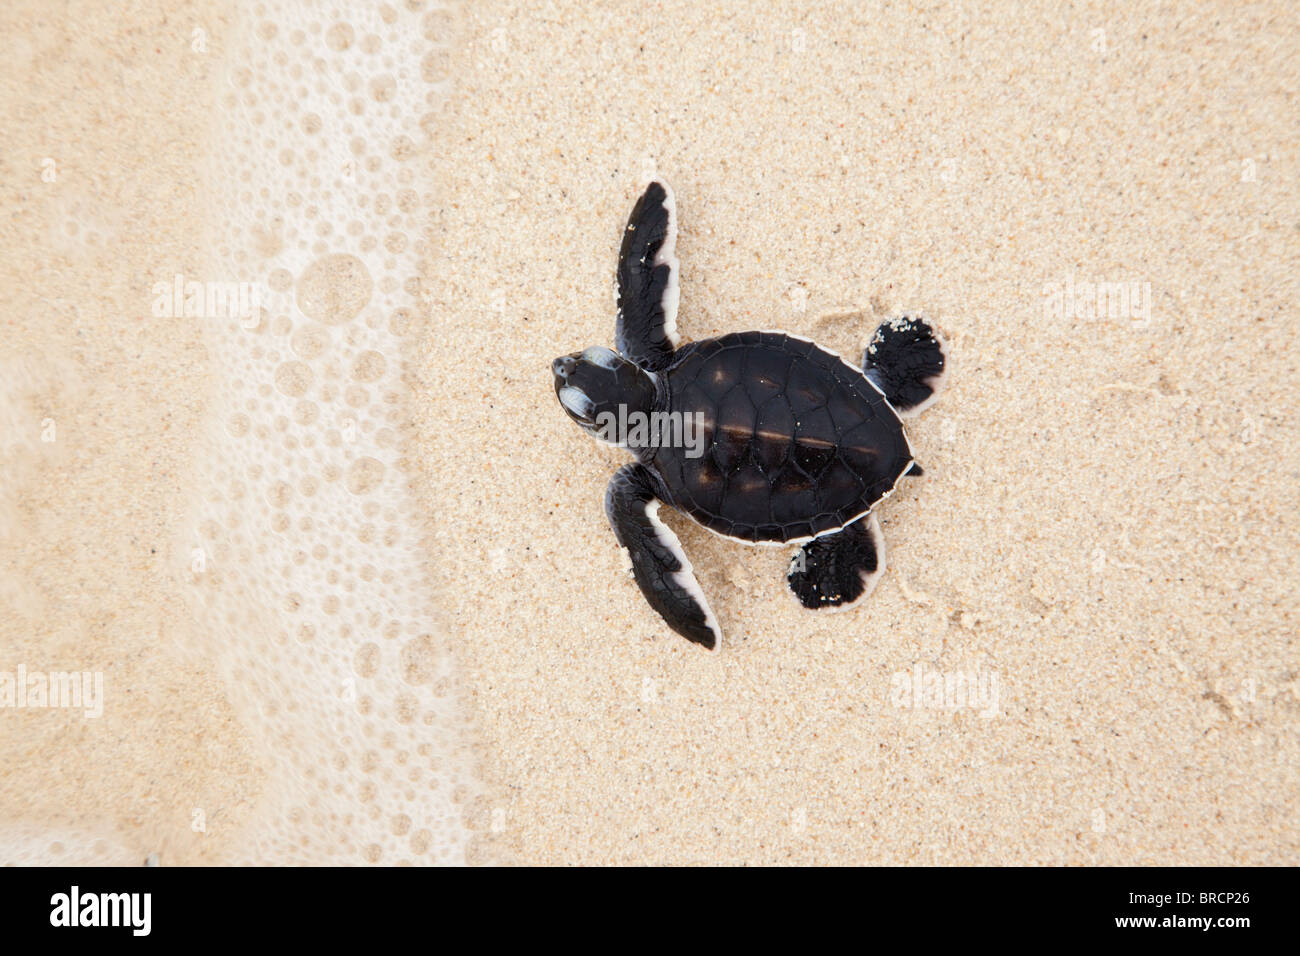 La tortue verte, Chelonia mydas, faisant son chemin vers la mer, l'île de Selingan, Sabah, Bornéo Banque D'Images